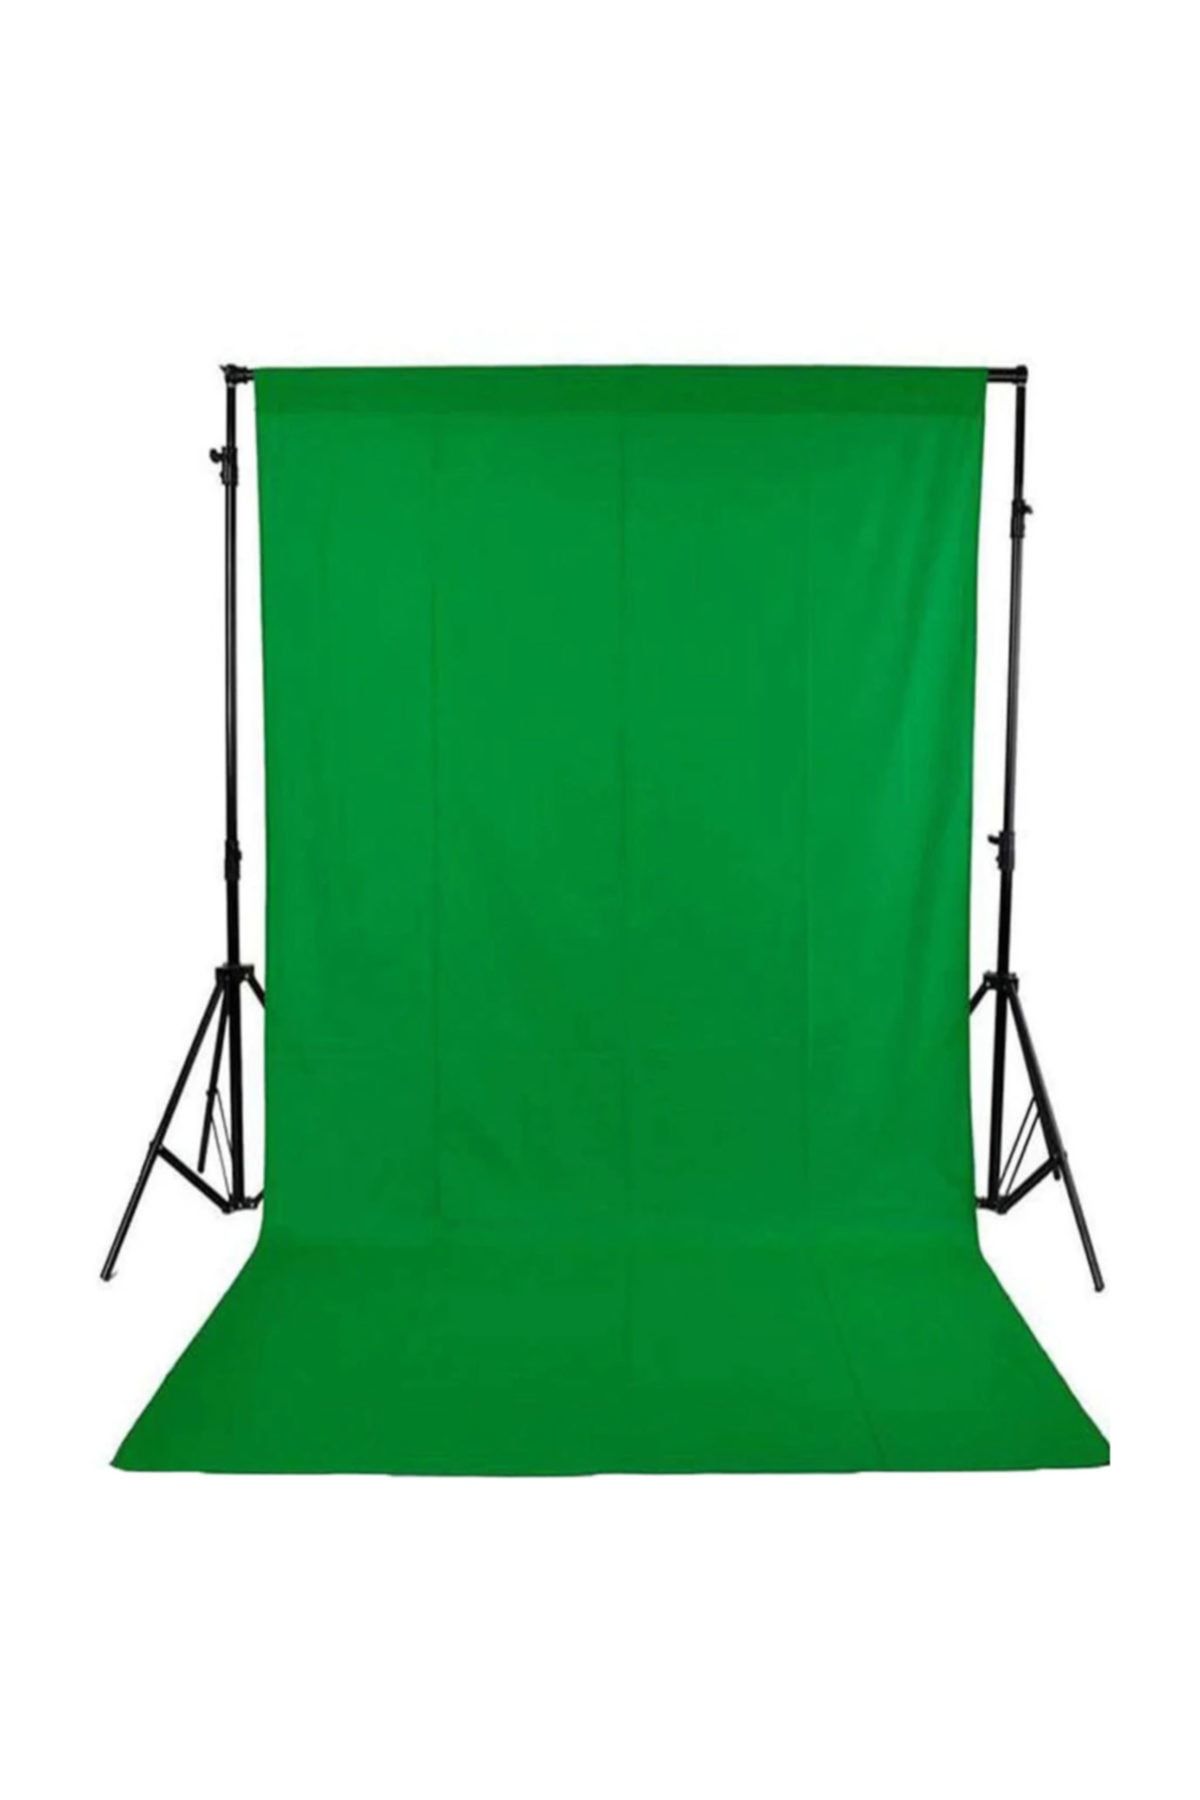 Deyatech Green Screen- Greenbox -yeşil Fon Perde (3x4m) + Fon Standı